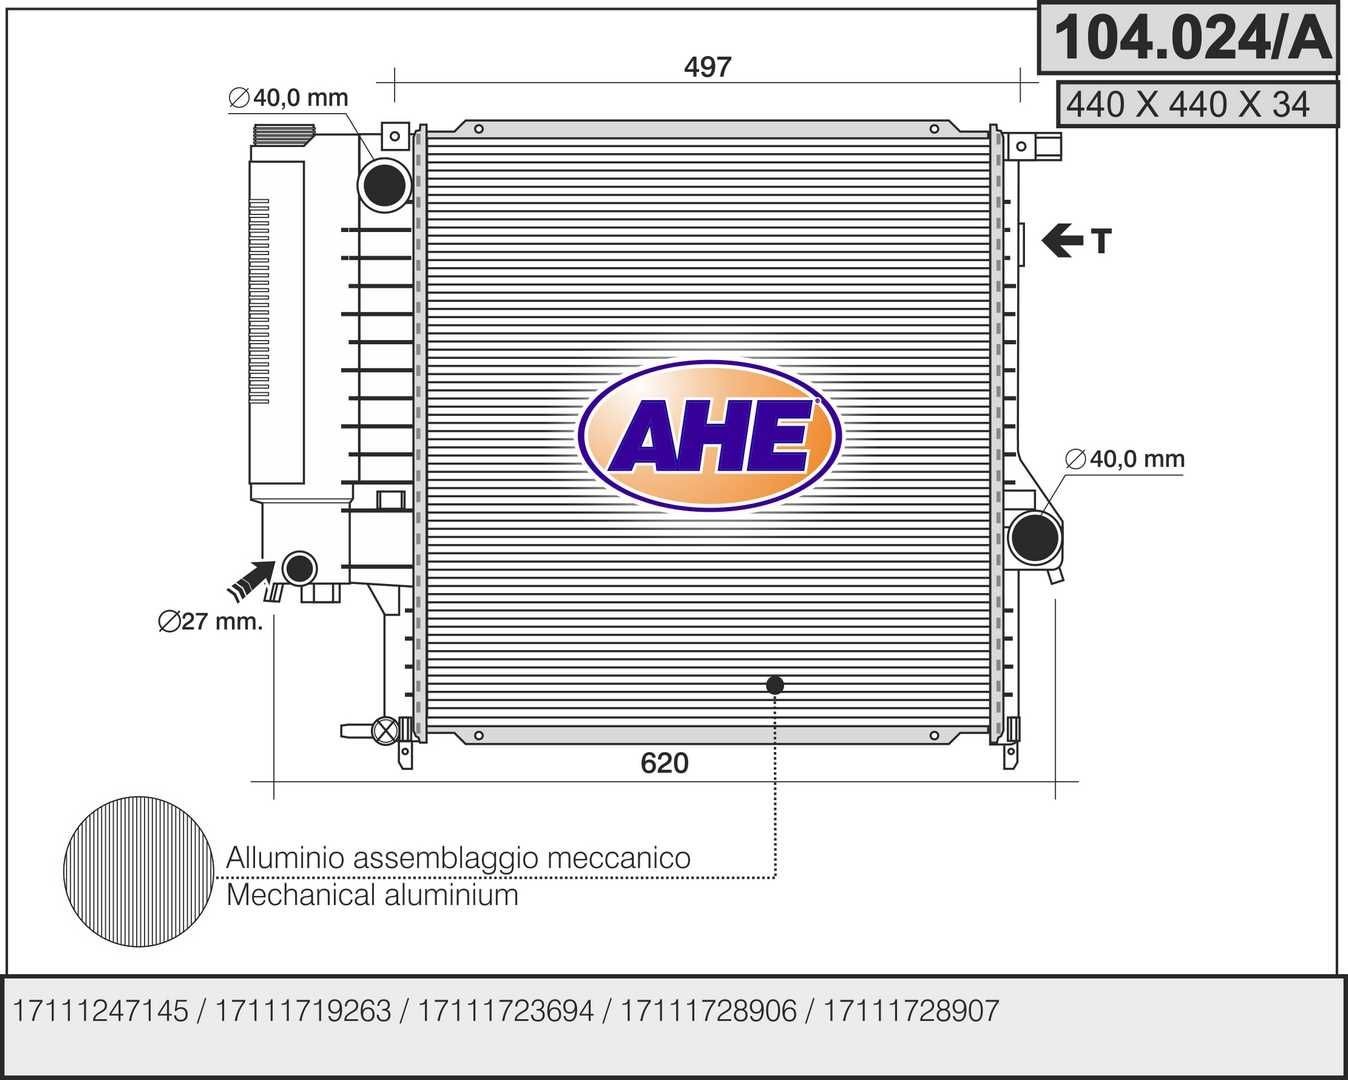 AHE 104.024/A Engine radiator 17 11 1 728 906